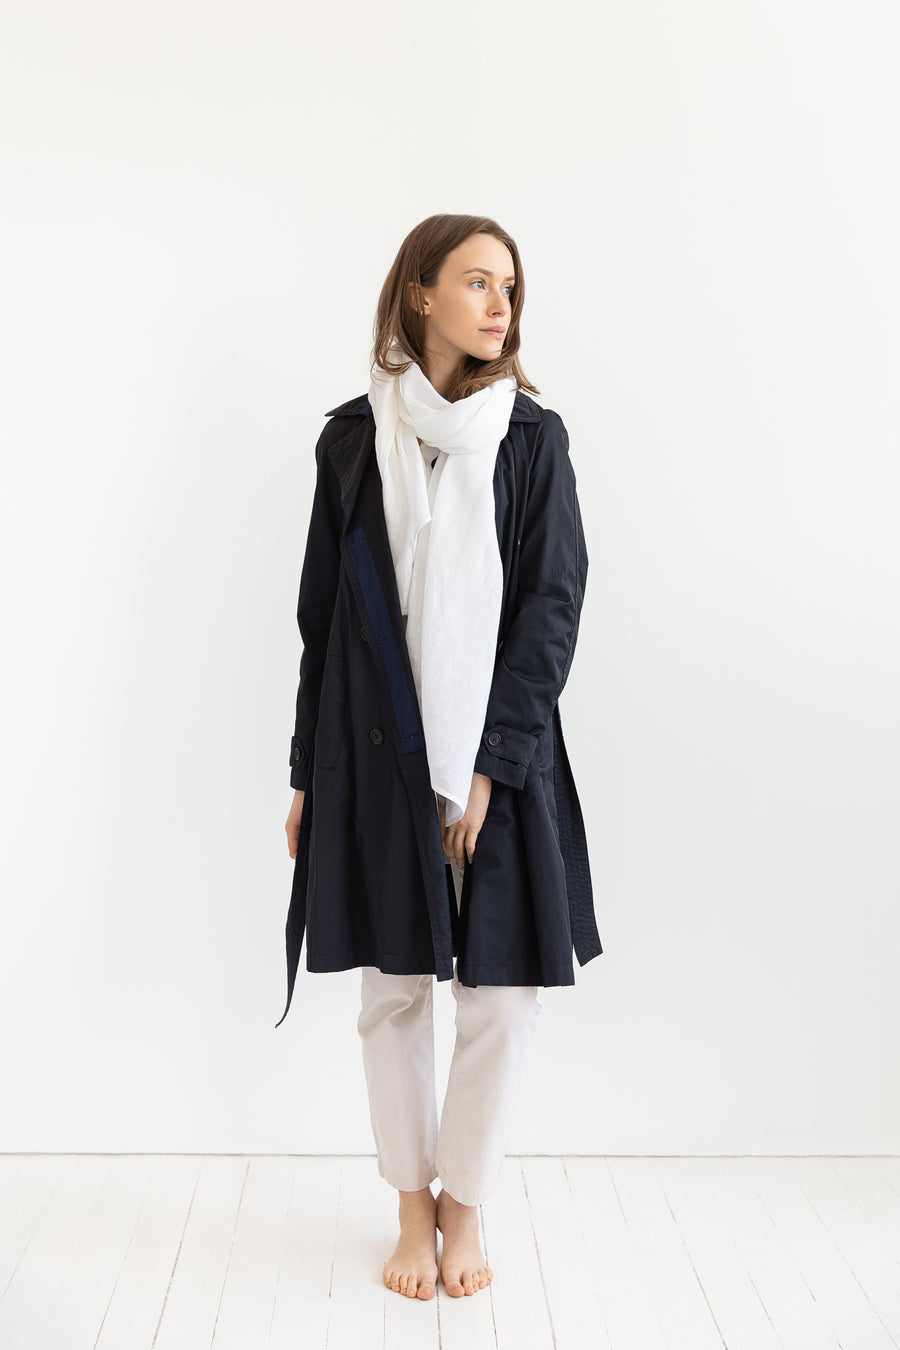 Snow White linen scarf - Linen Couture Boutique